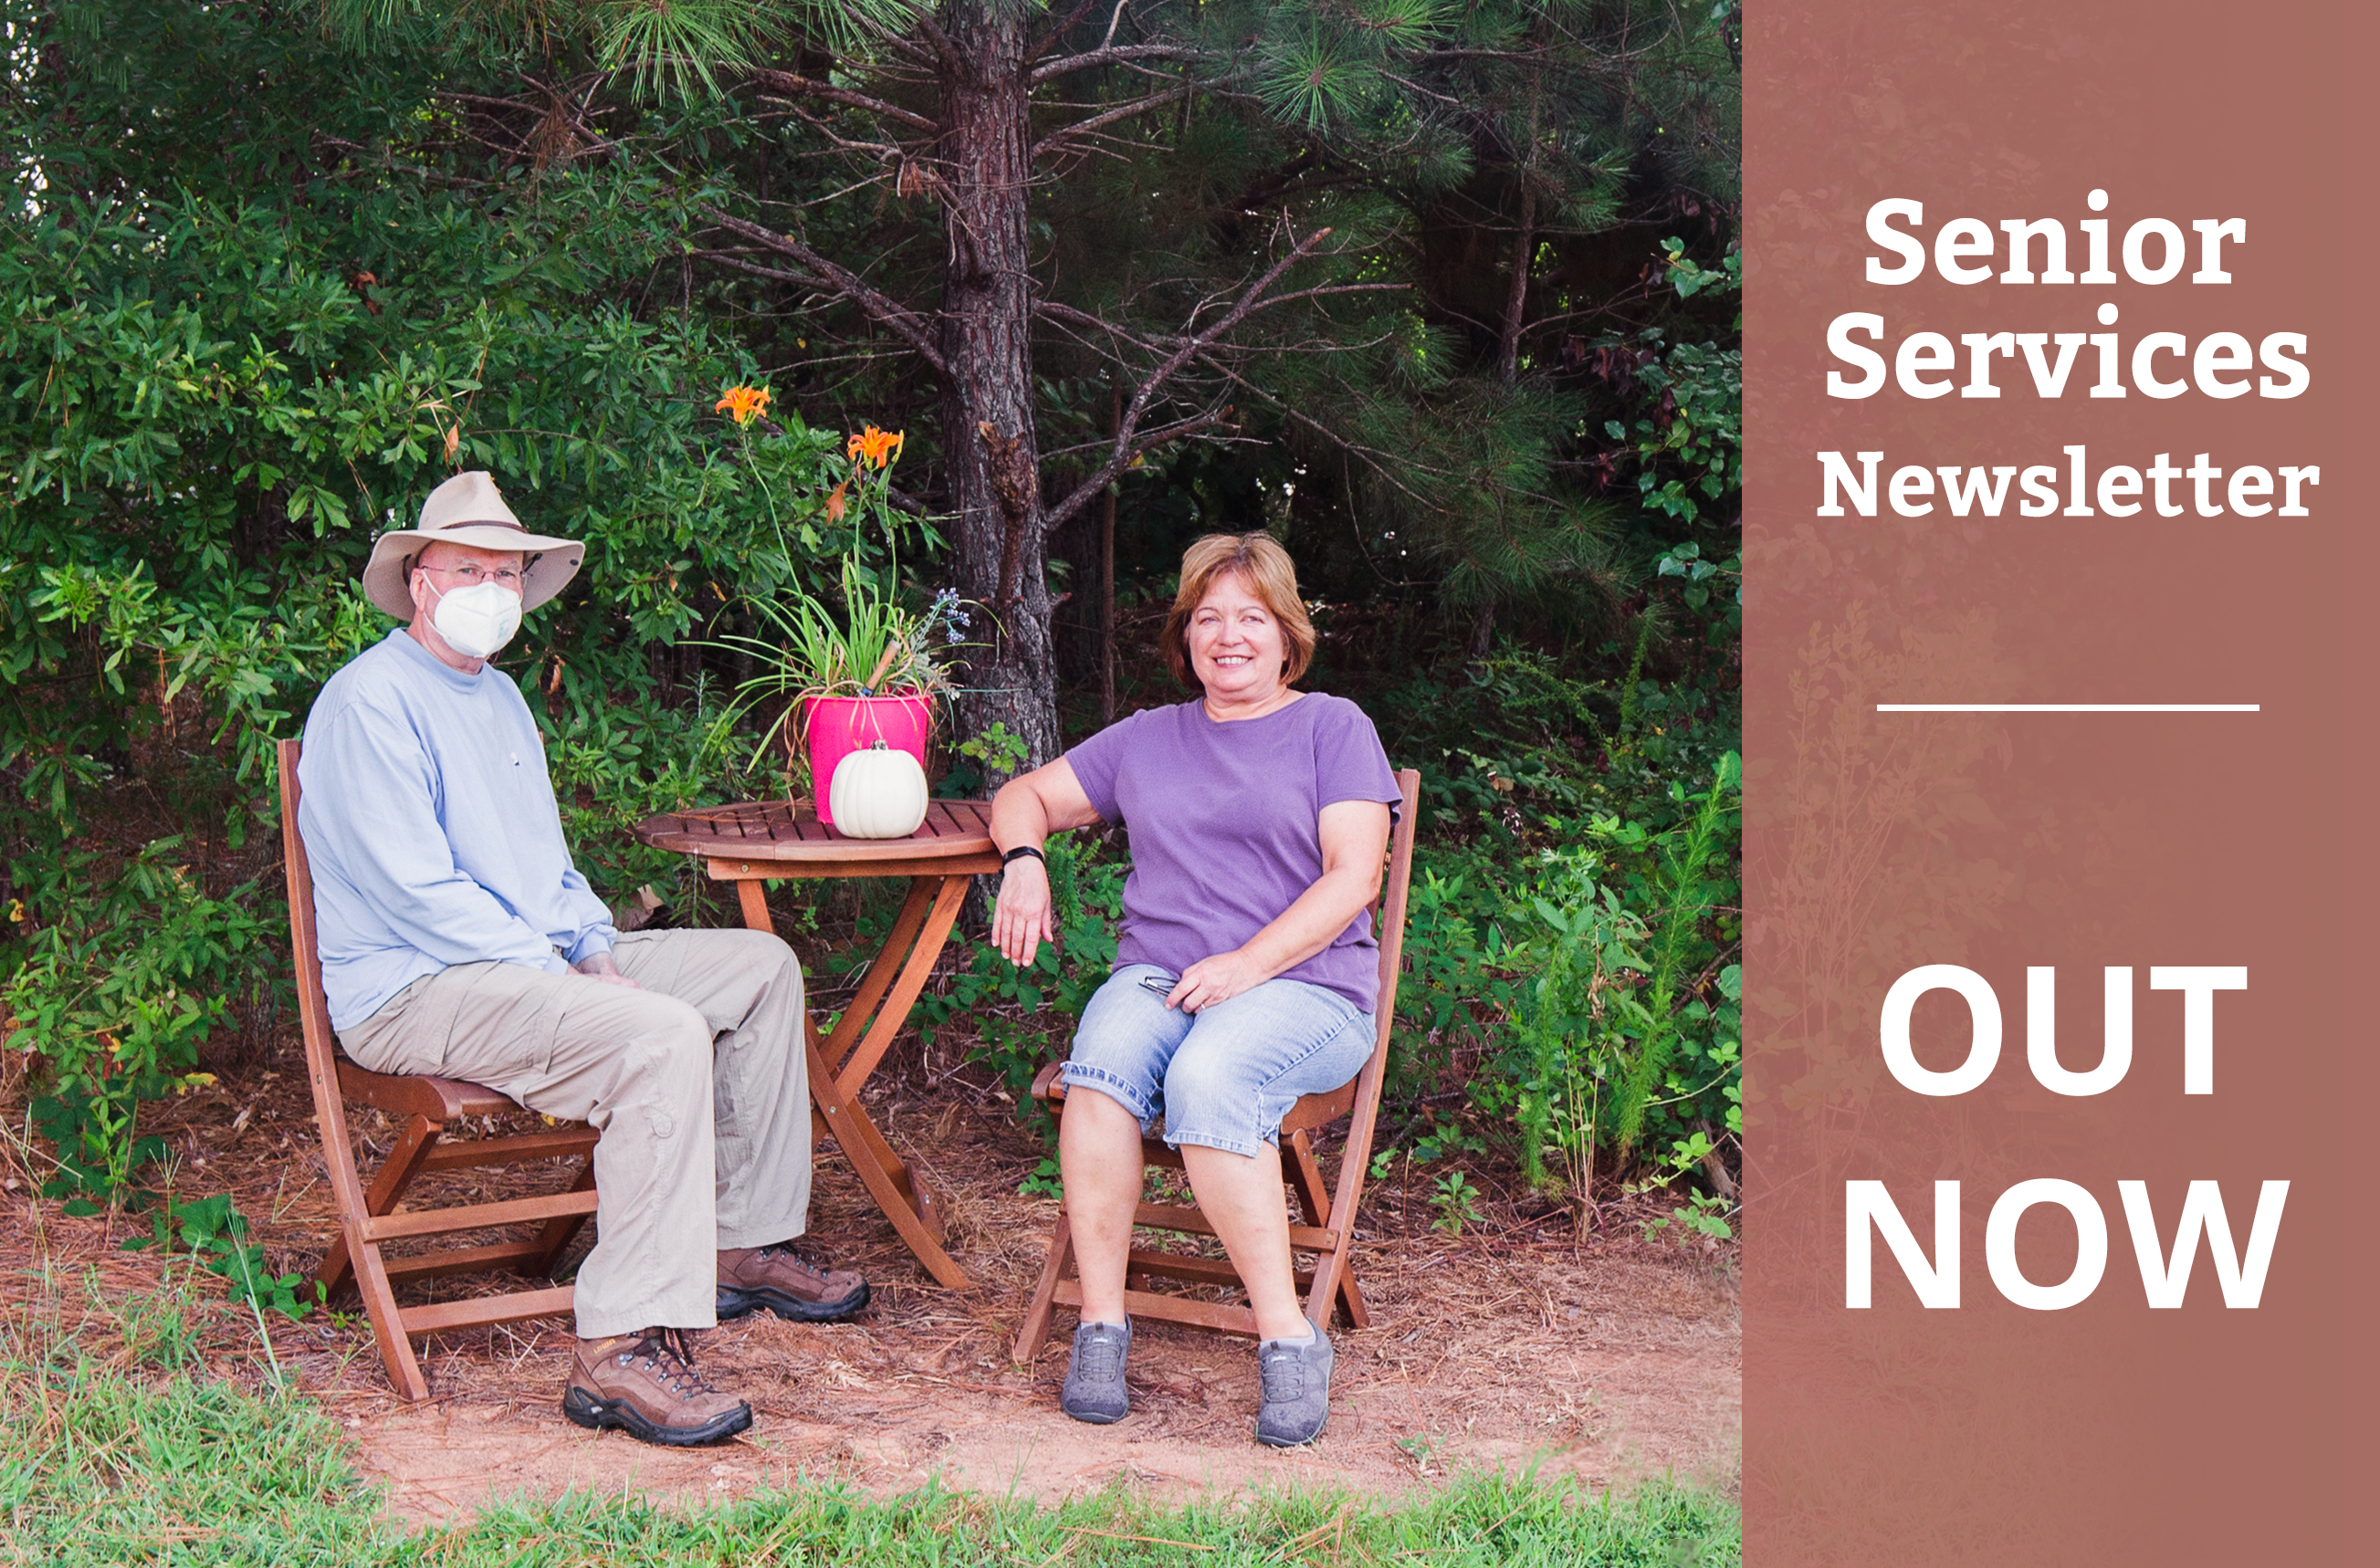 SM senior services newsletter SeptOct '21.jpg